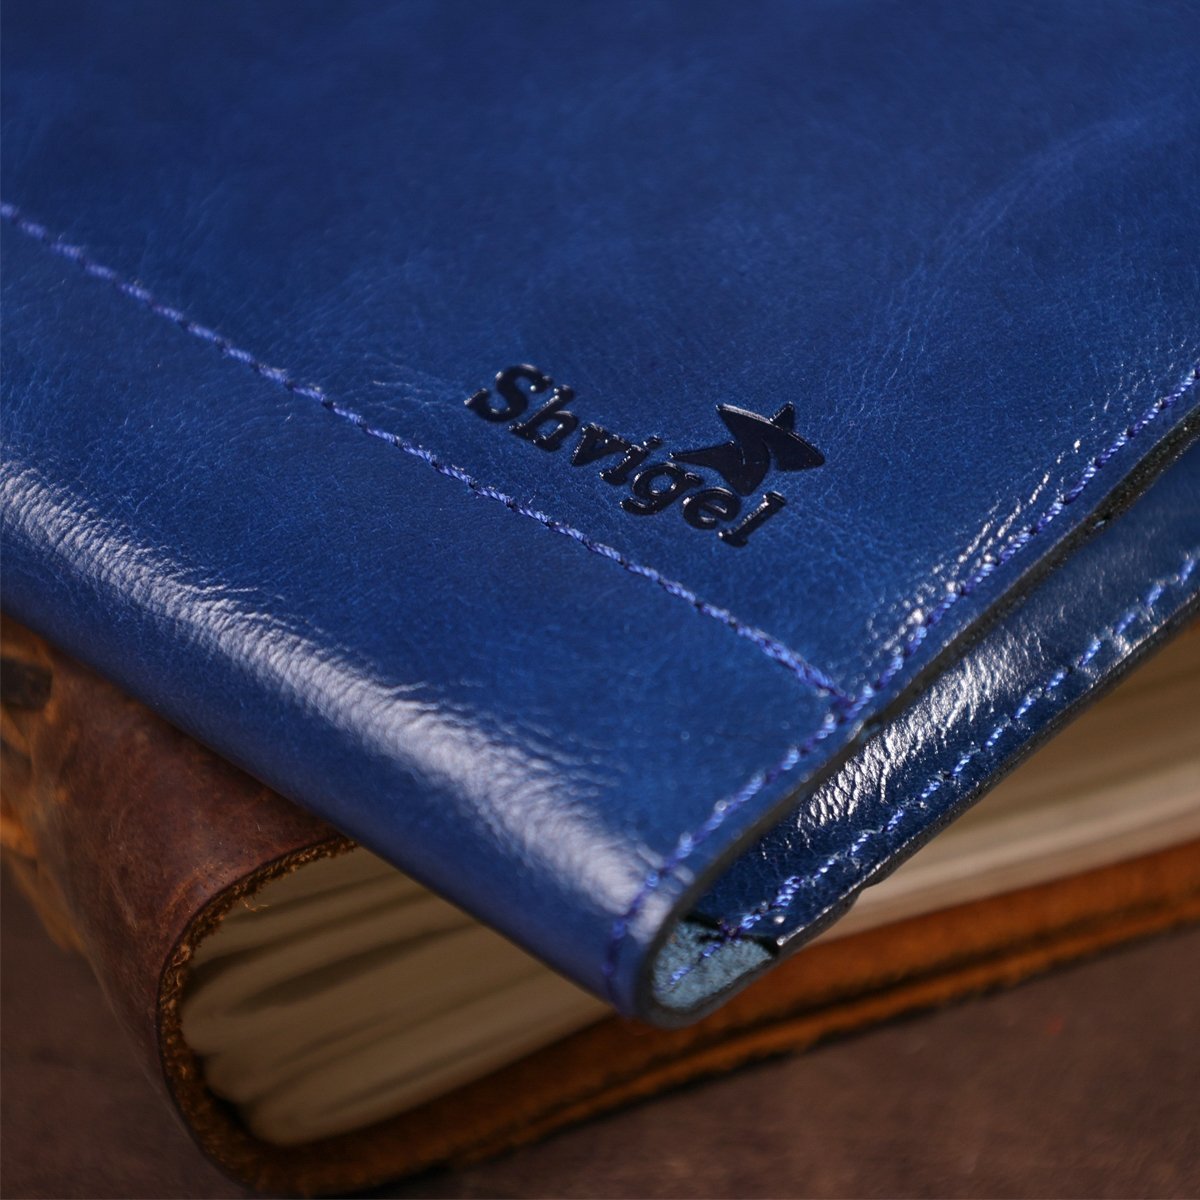 Синий кошелек-клатч из гладкой кожи на молниевой застежке SHVIGEL (16183)